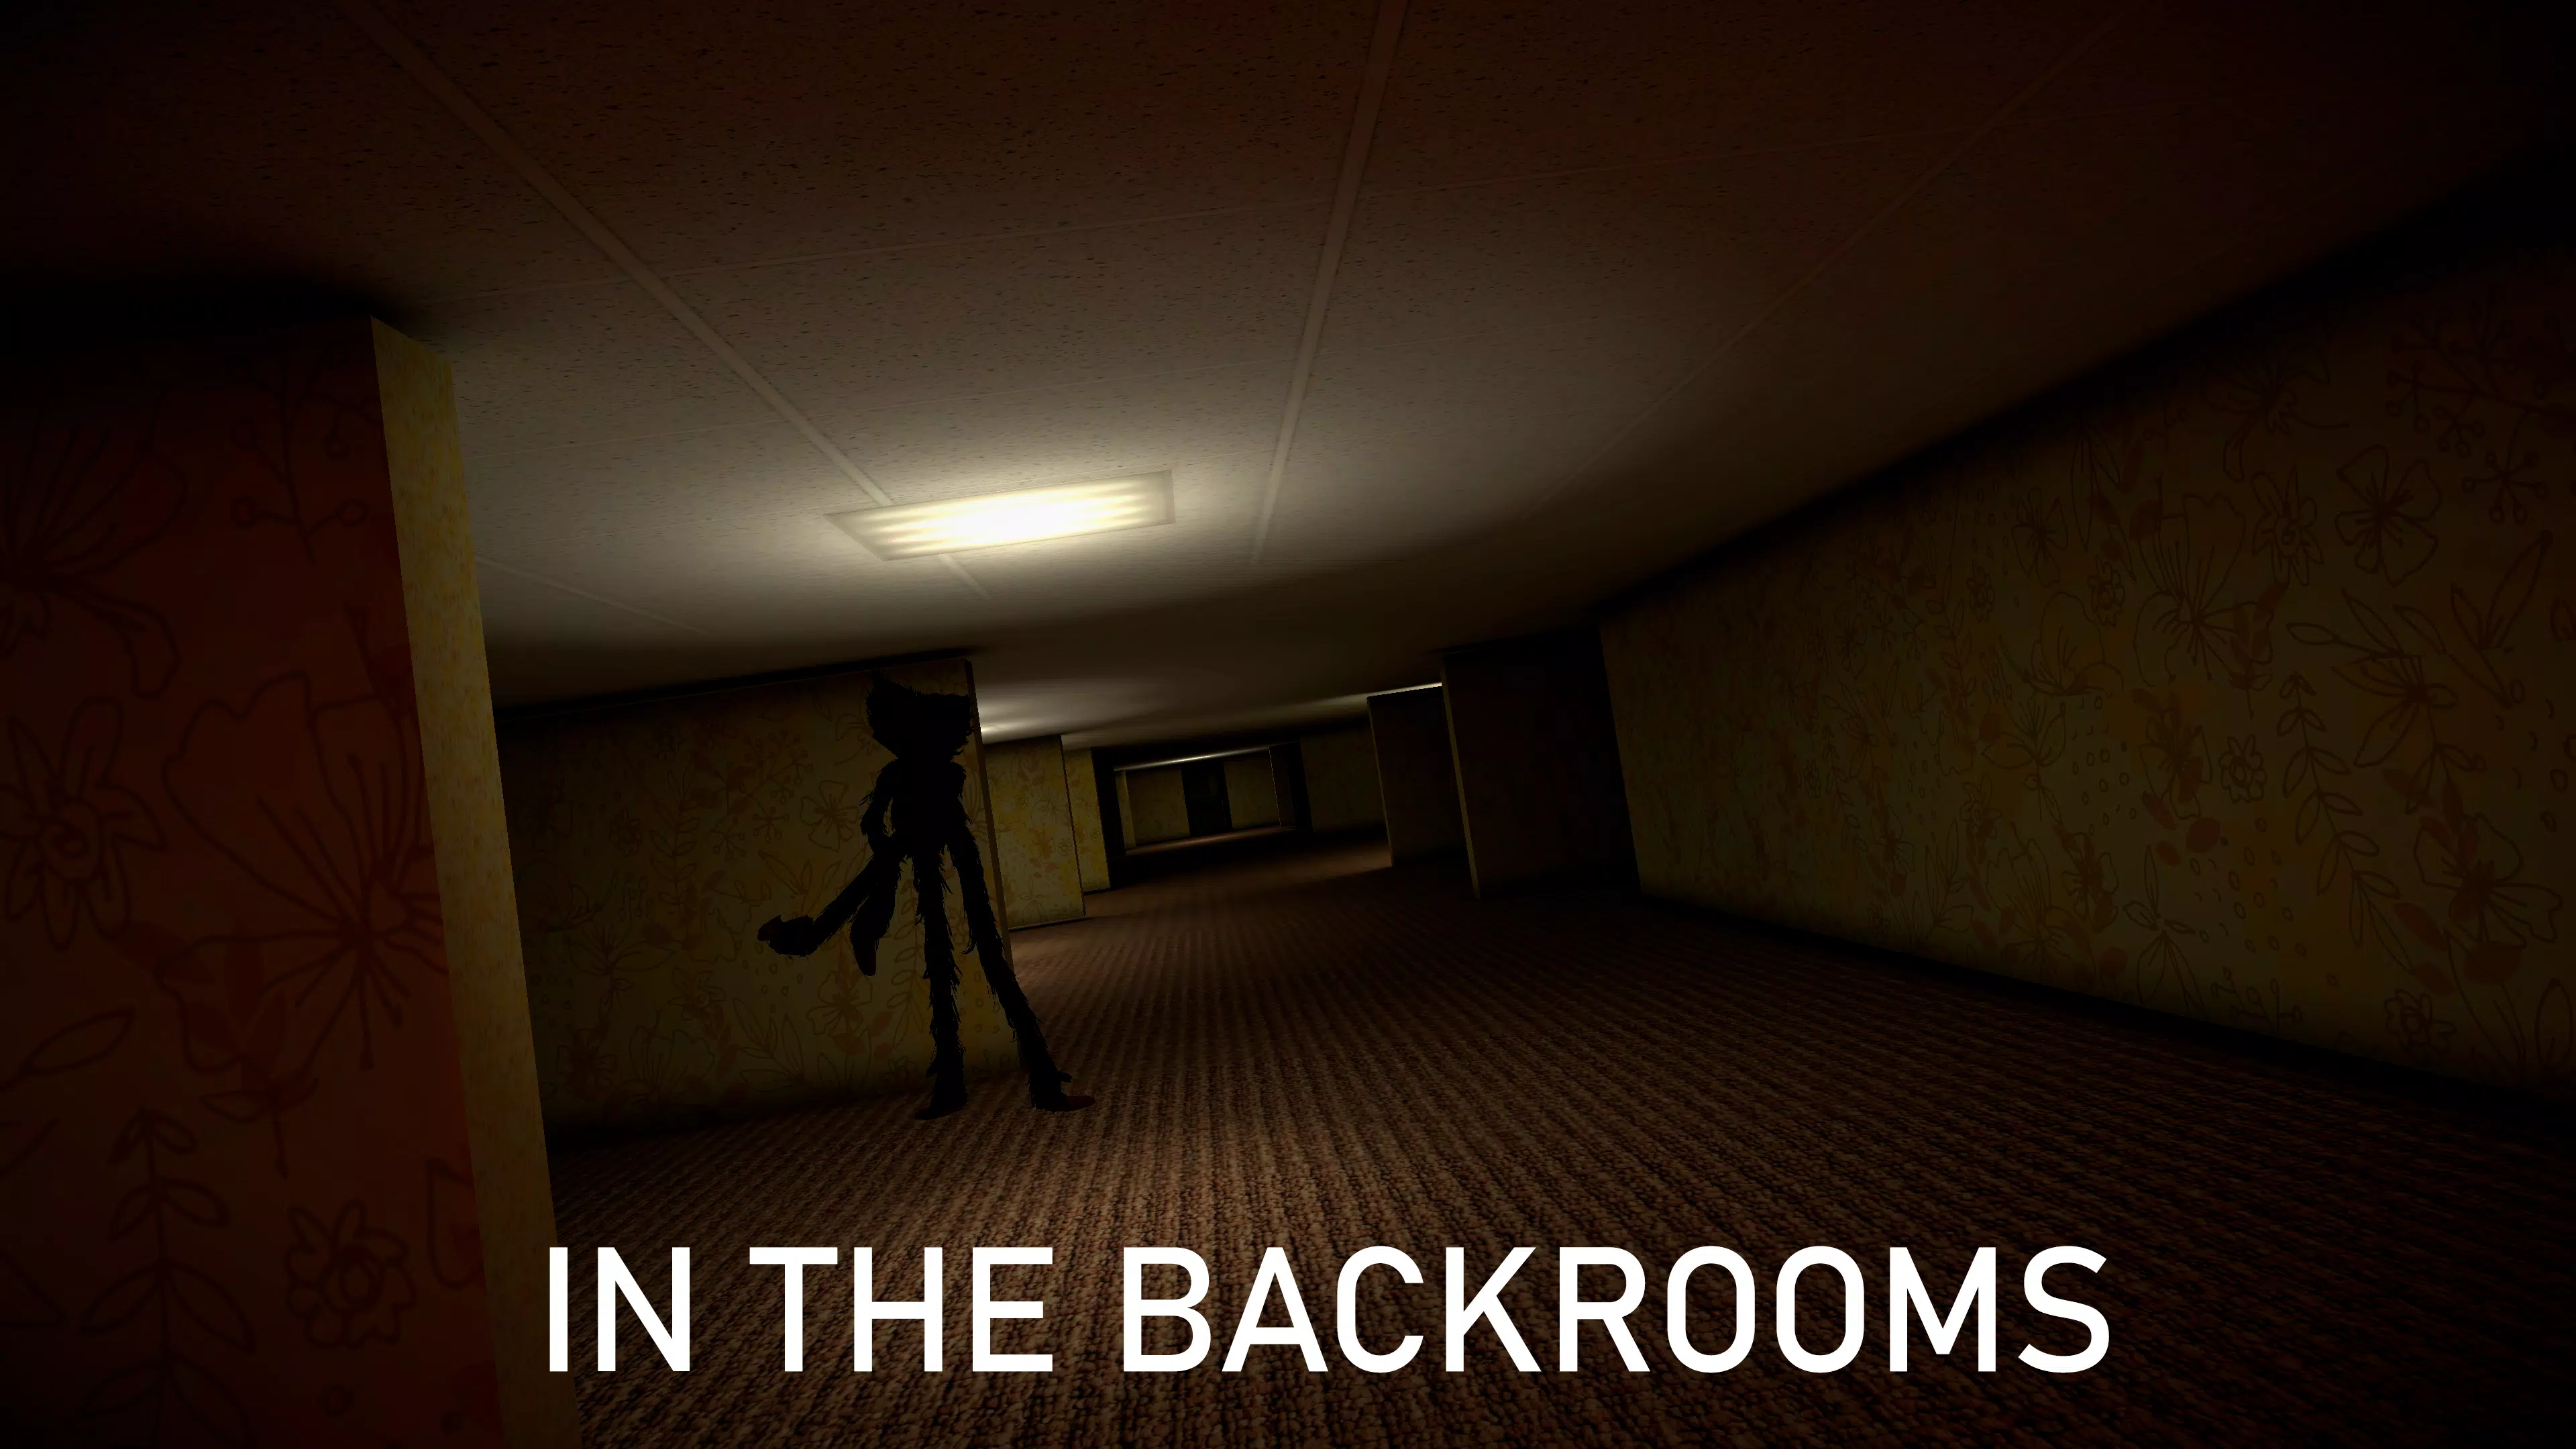 Backrooms #multiplayer #mobilegames #horror #gametok #fy #mobilega